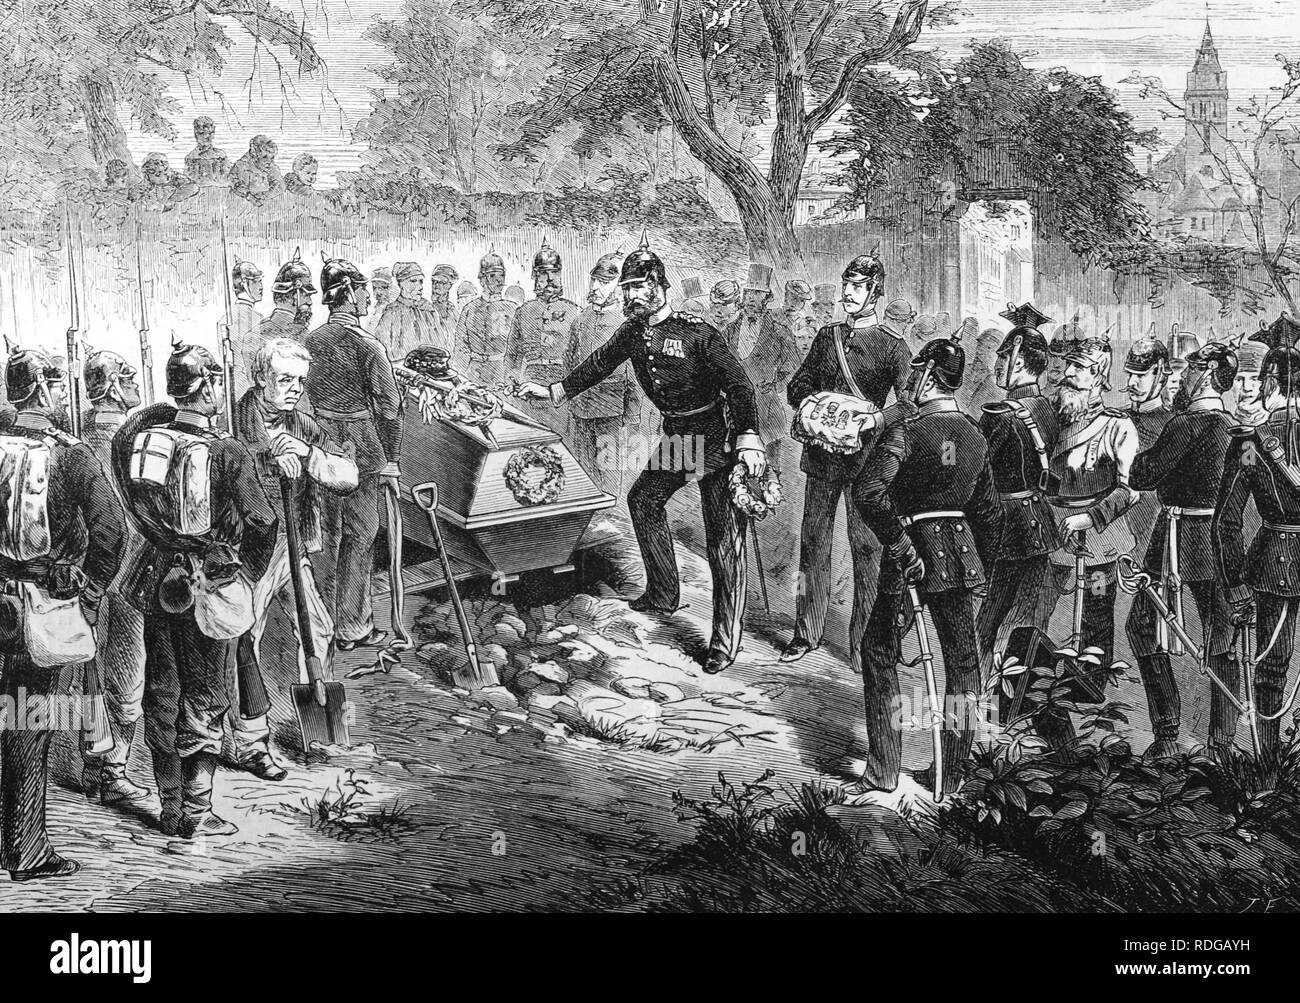 Le général français Donaine enterré par les troupes prussiennes à Sarreguemines, illustration historique, illustrated war chronicle 1870 à 1871 Banque D'Images